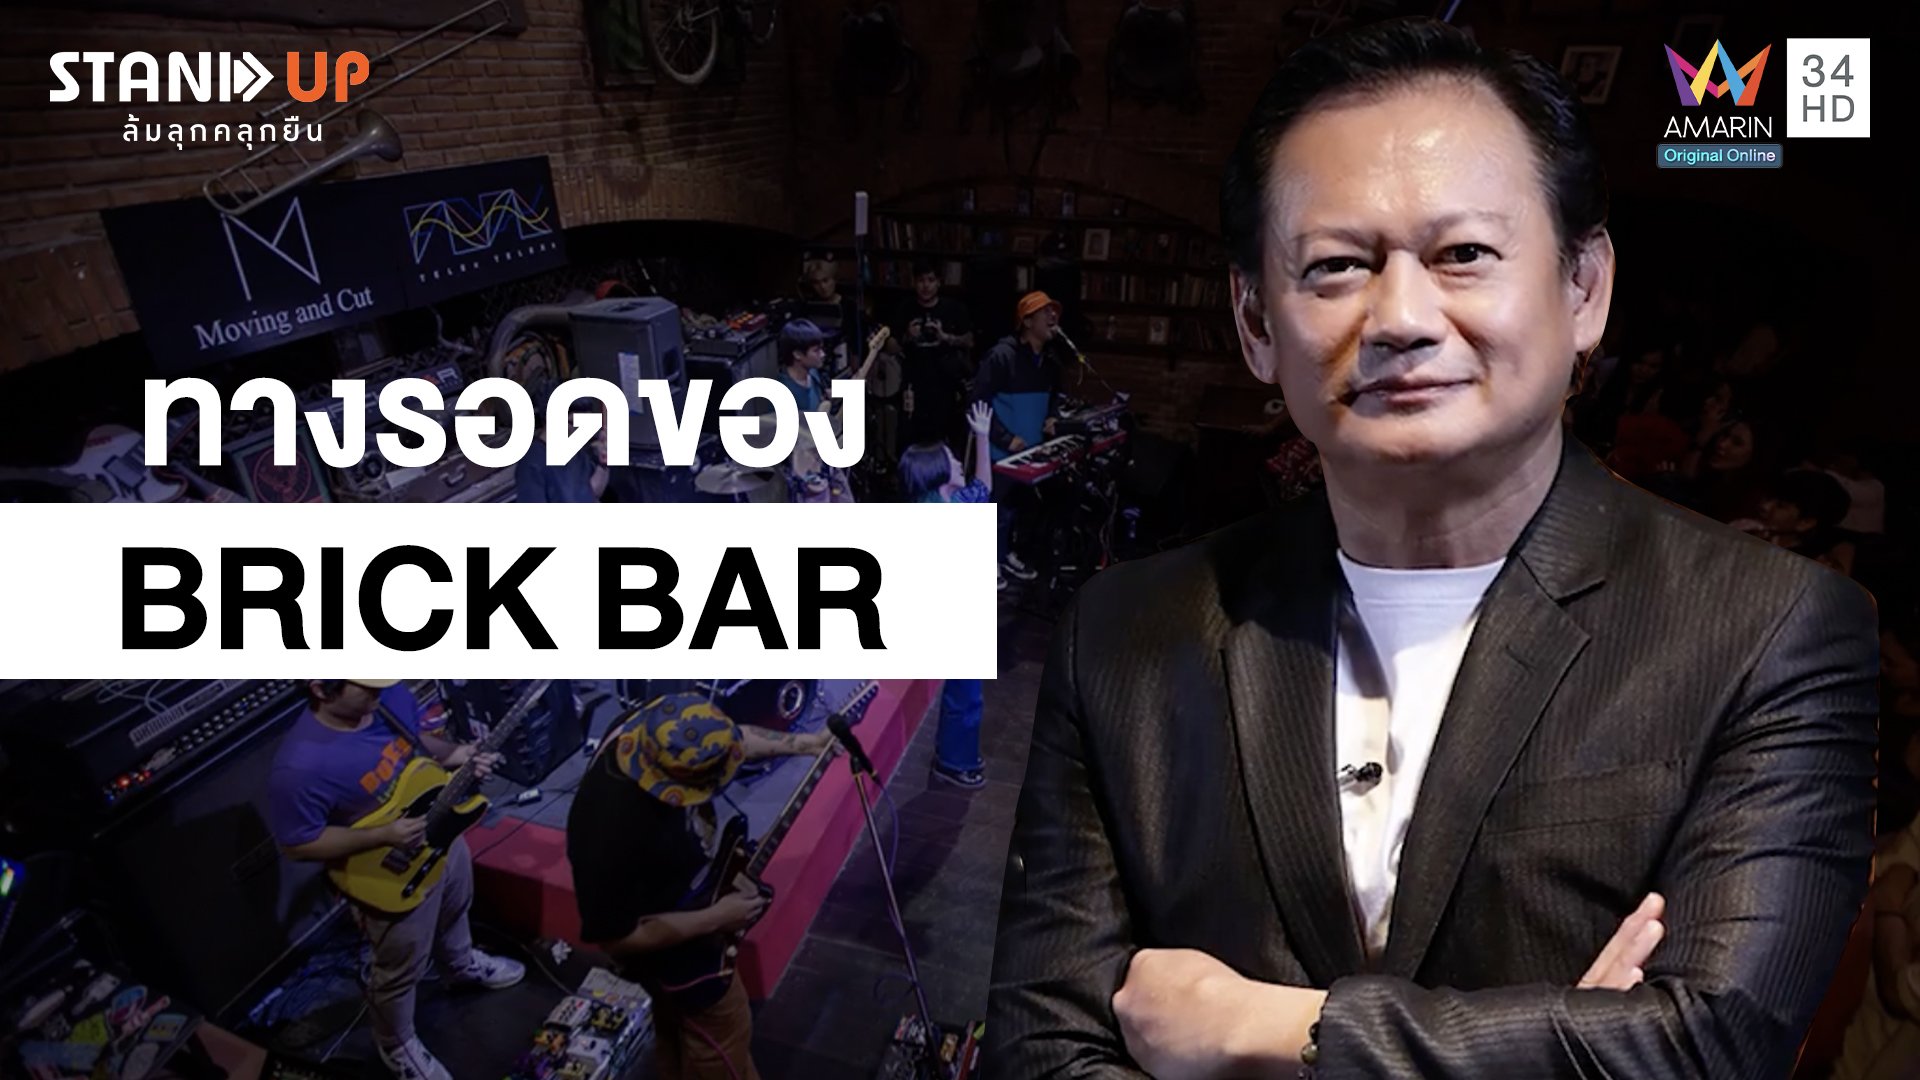 ทางรอดของBrick Bar ในวิกฤตเศรษฐกิจตกต่ำ!!!! | Stand Up ล้มลุกคลุกยืน | 14 มิ.ย. 64 | AMARIN TVHD34